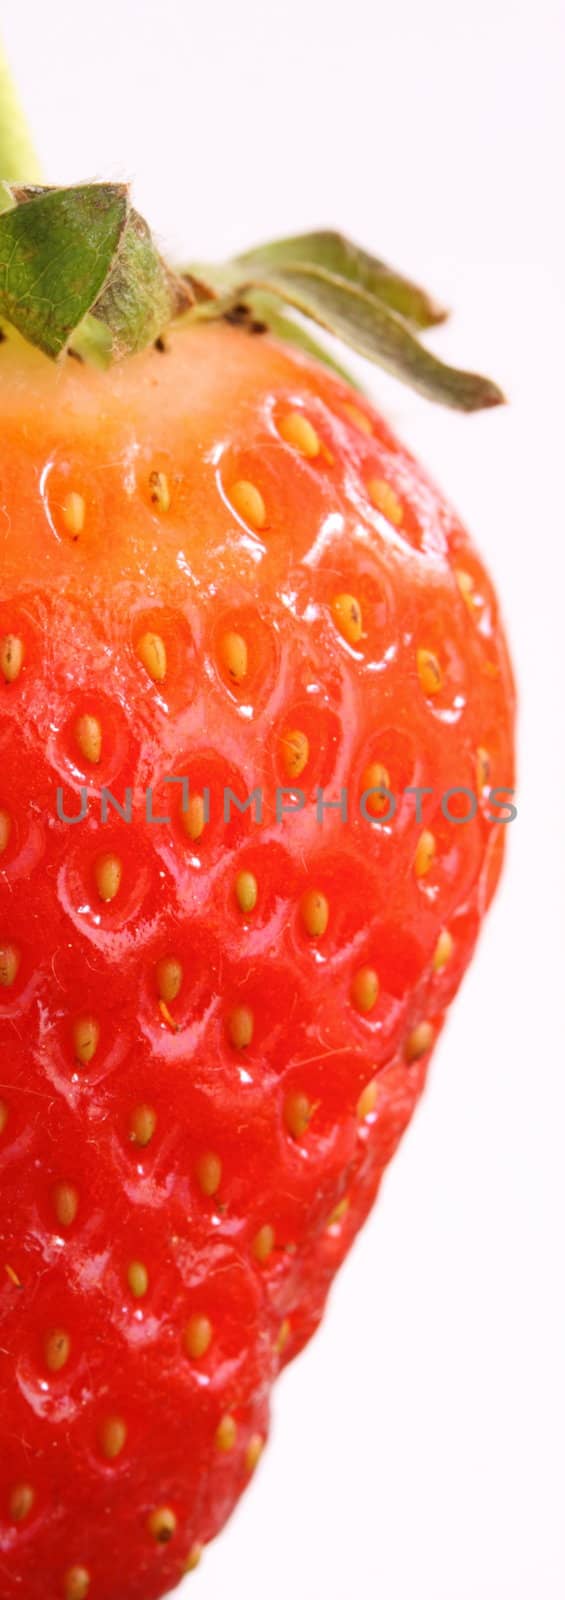 strawberry by mitzy